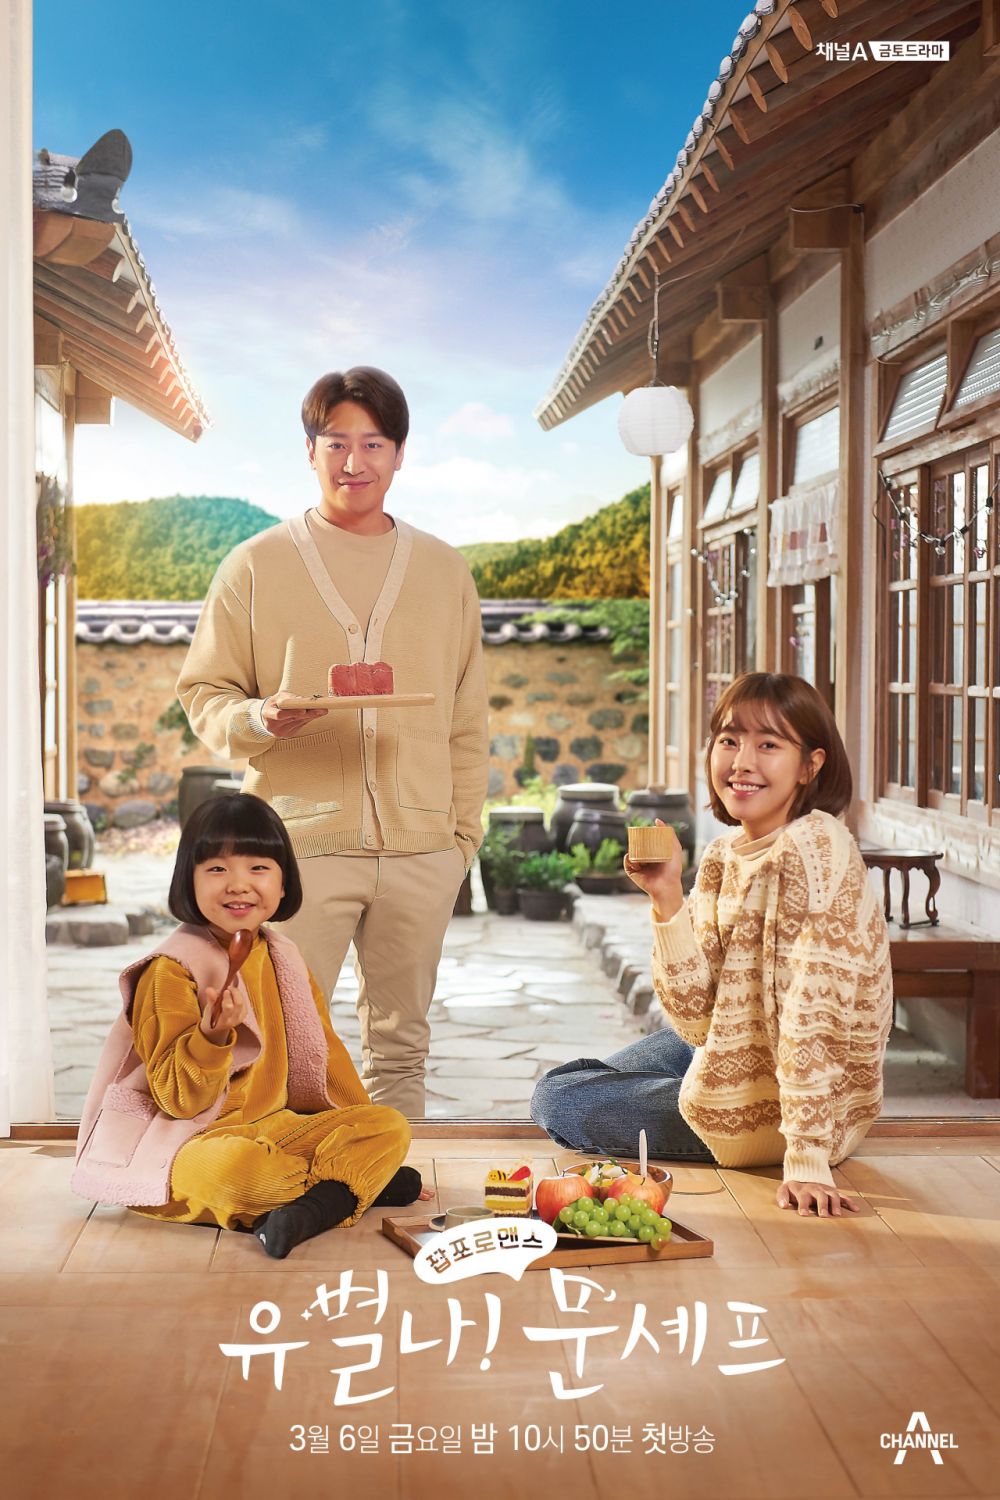 11 Drama Korea kisah tentang restoran, cerita seru di balik hidangan